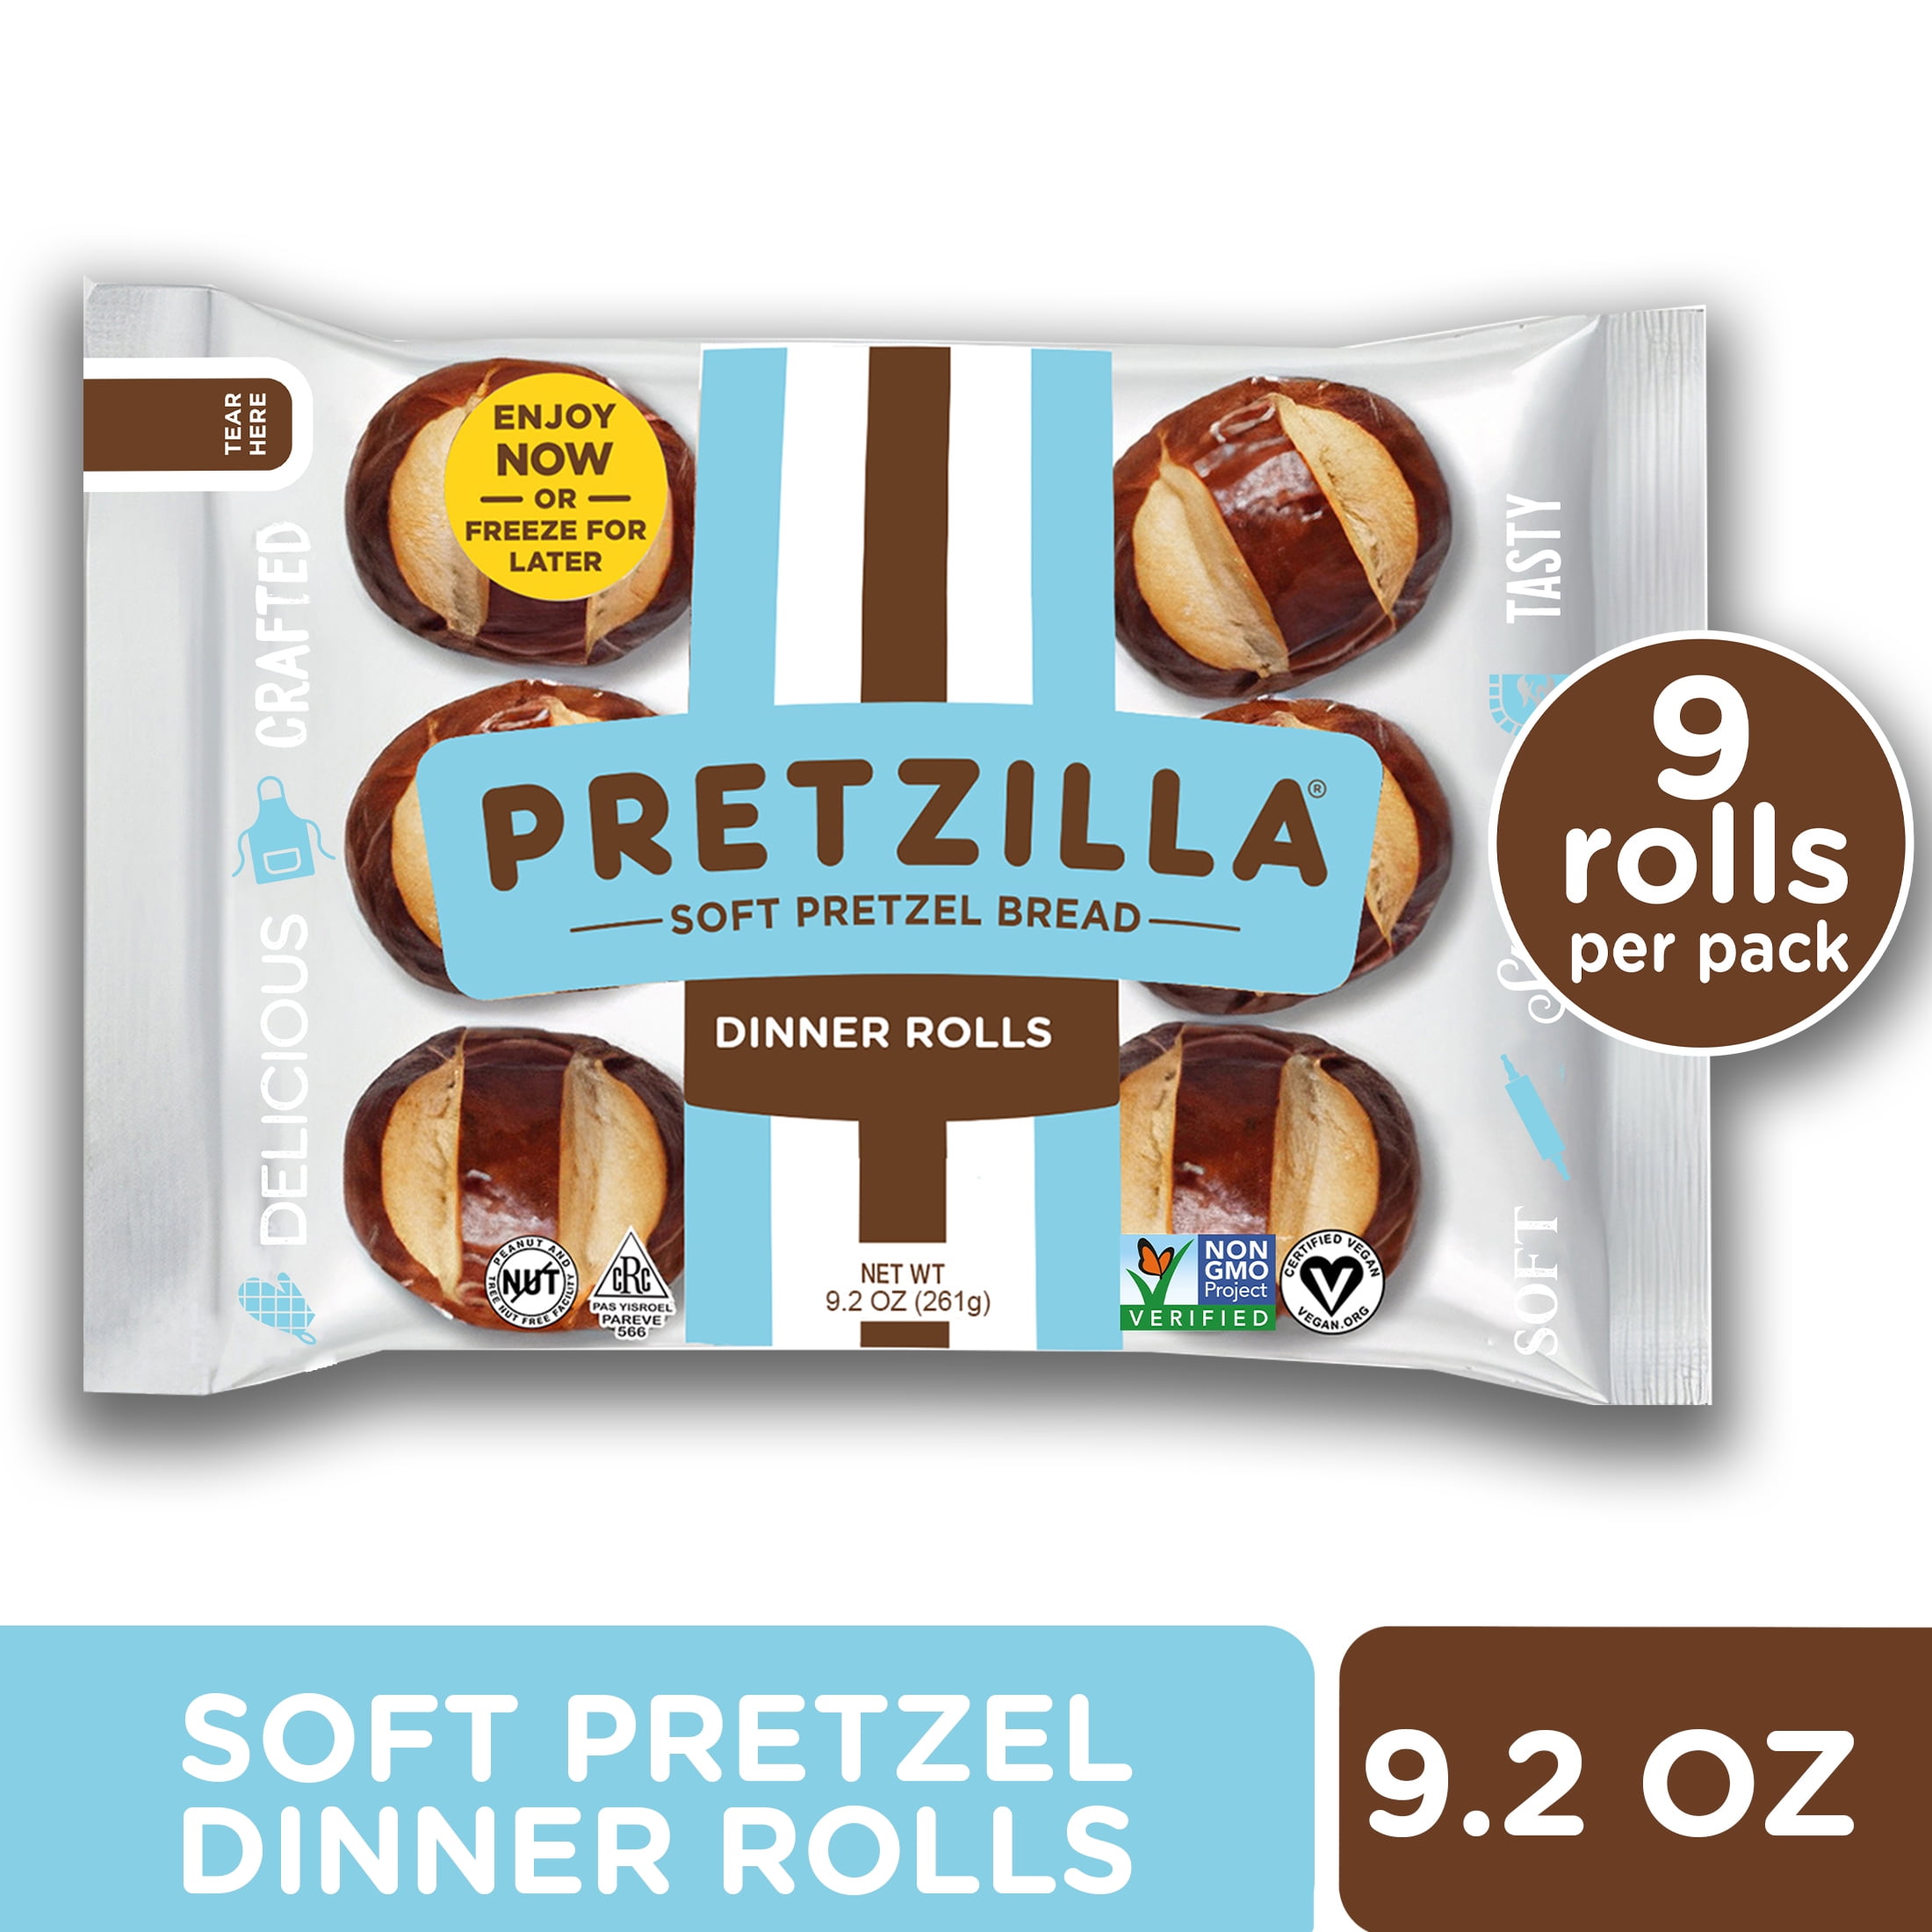 PRETZILLA Soft Pretzel Dinner Rolls, 9 rolls